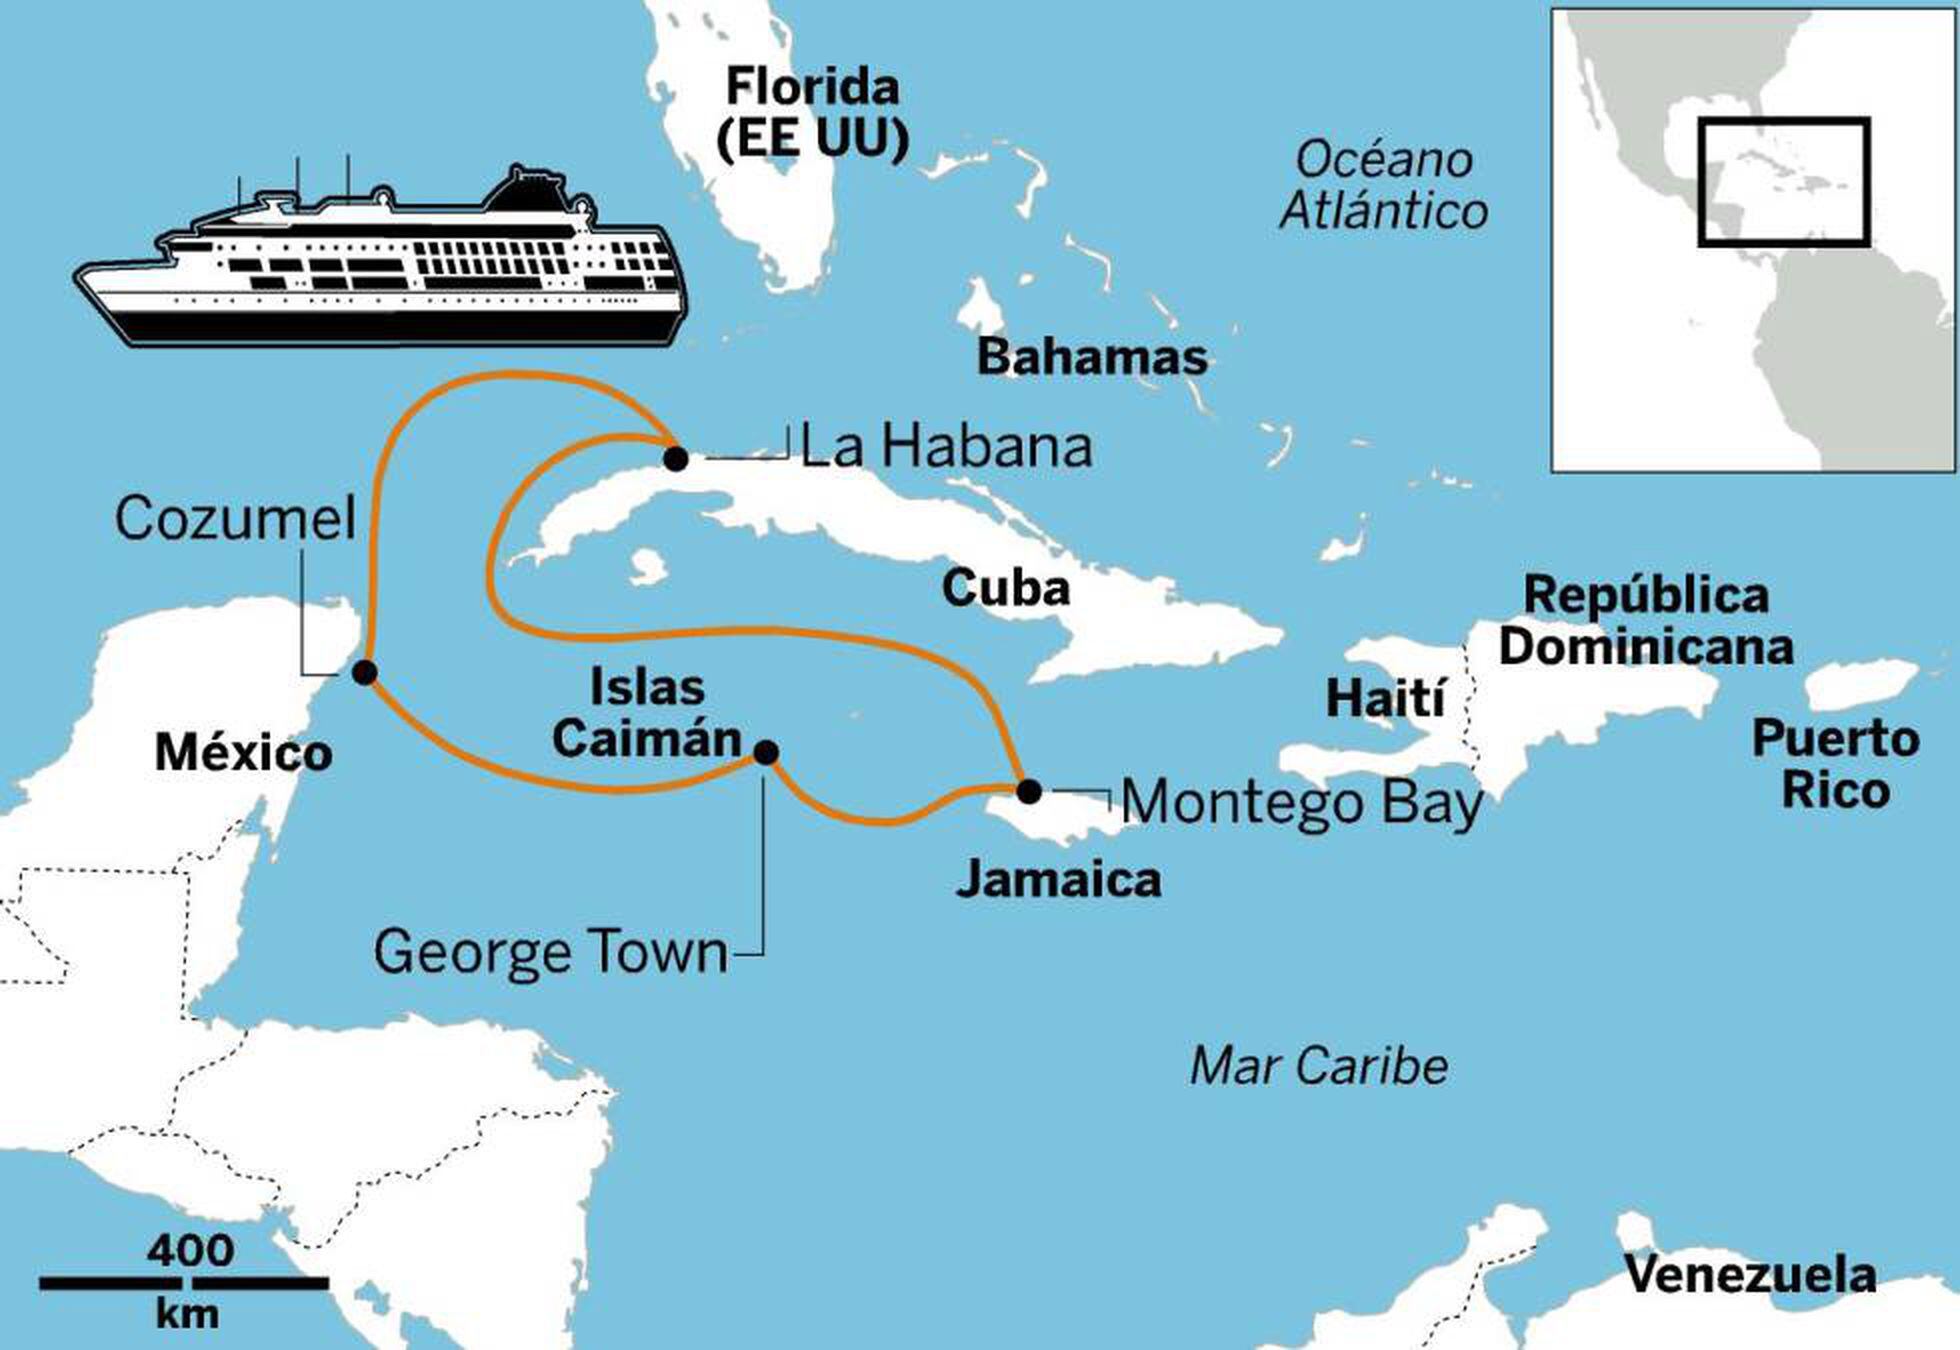 Cruceros: Intensivo caribeño en siete días | El Viajero | EL PAÍS